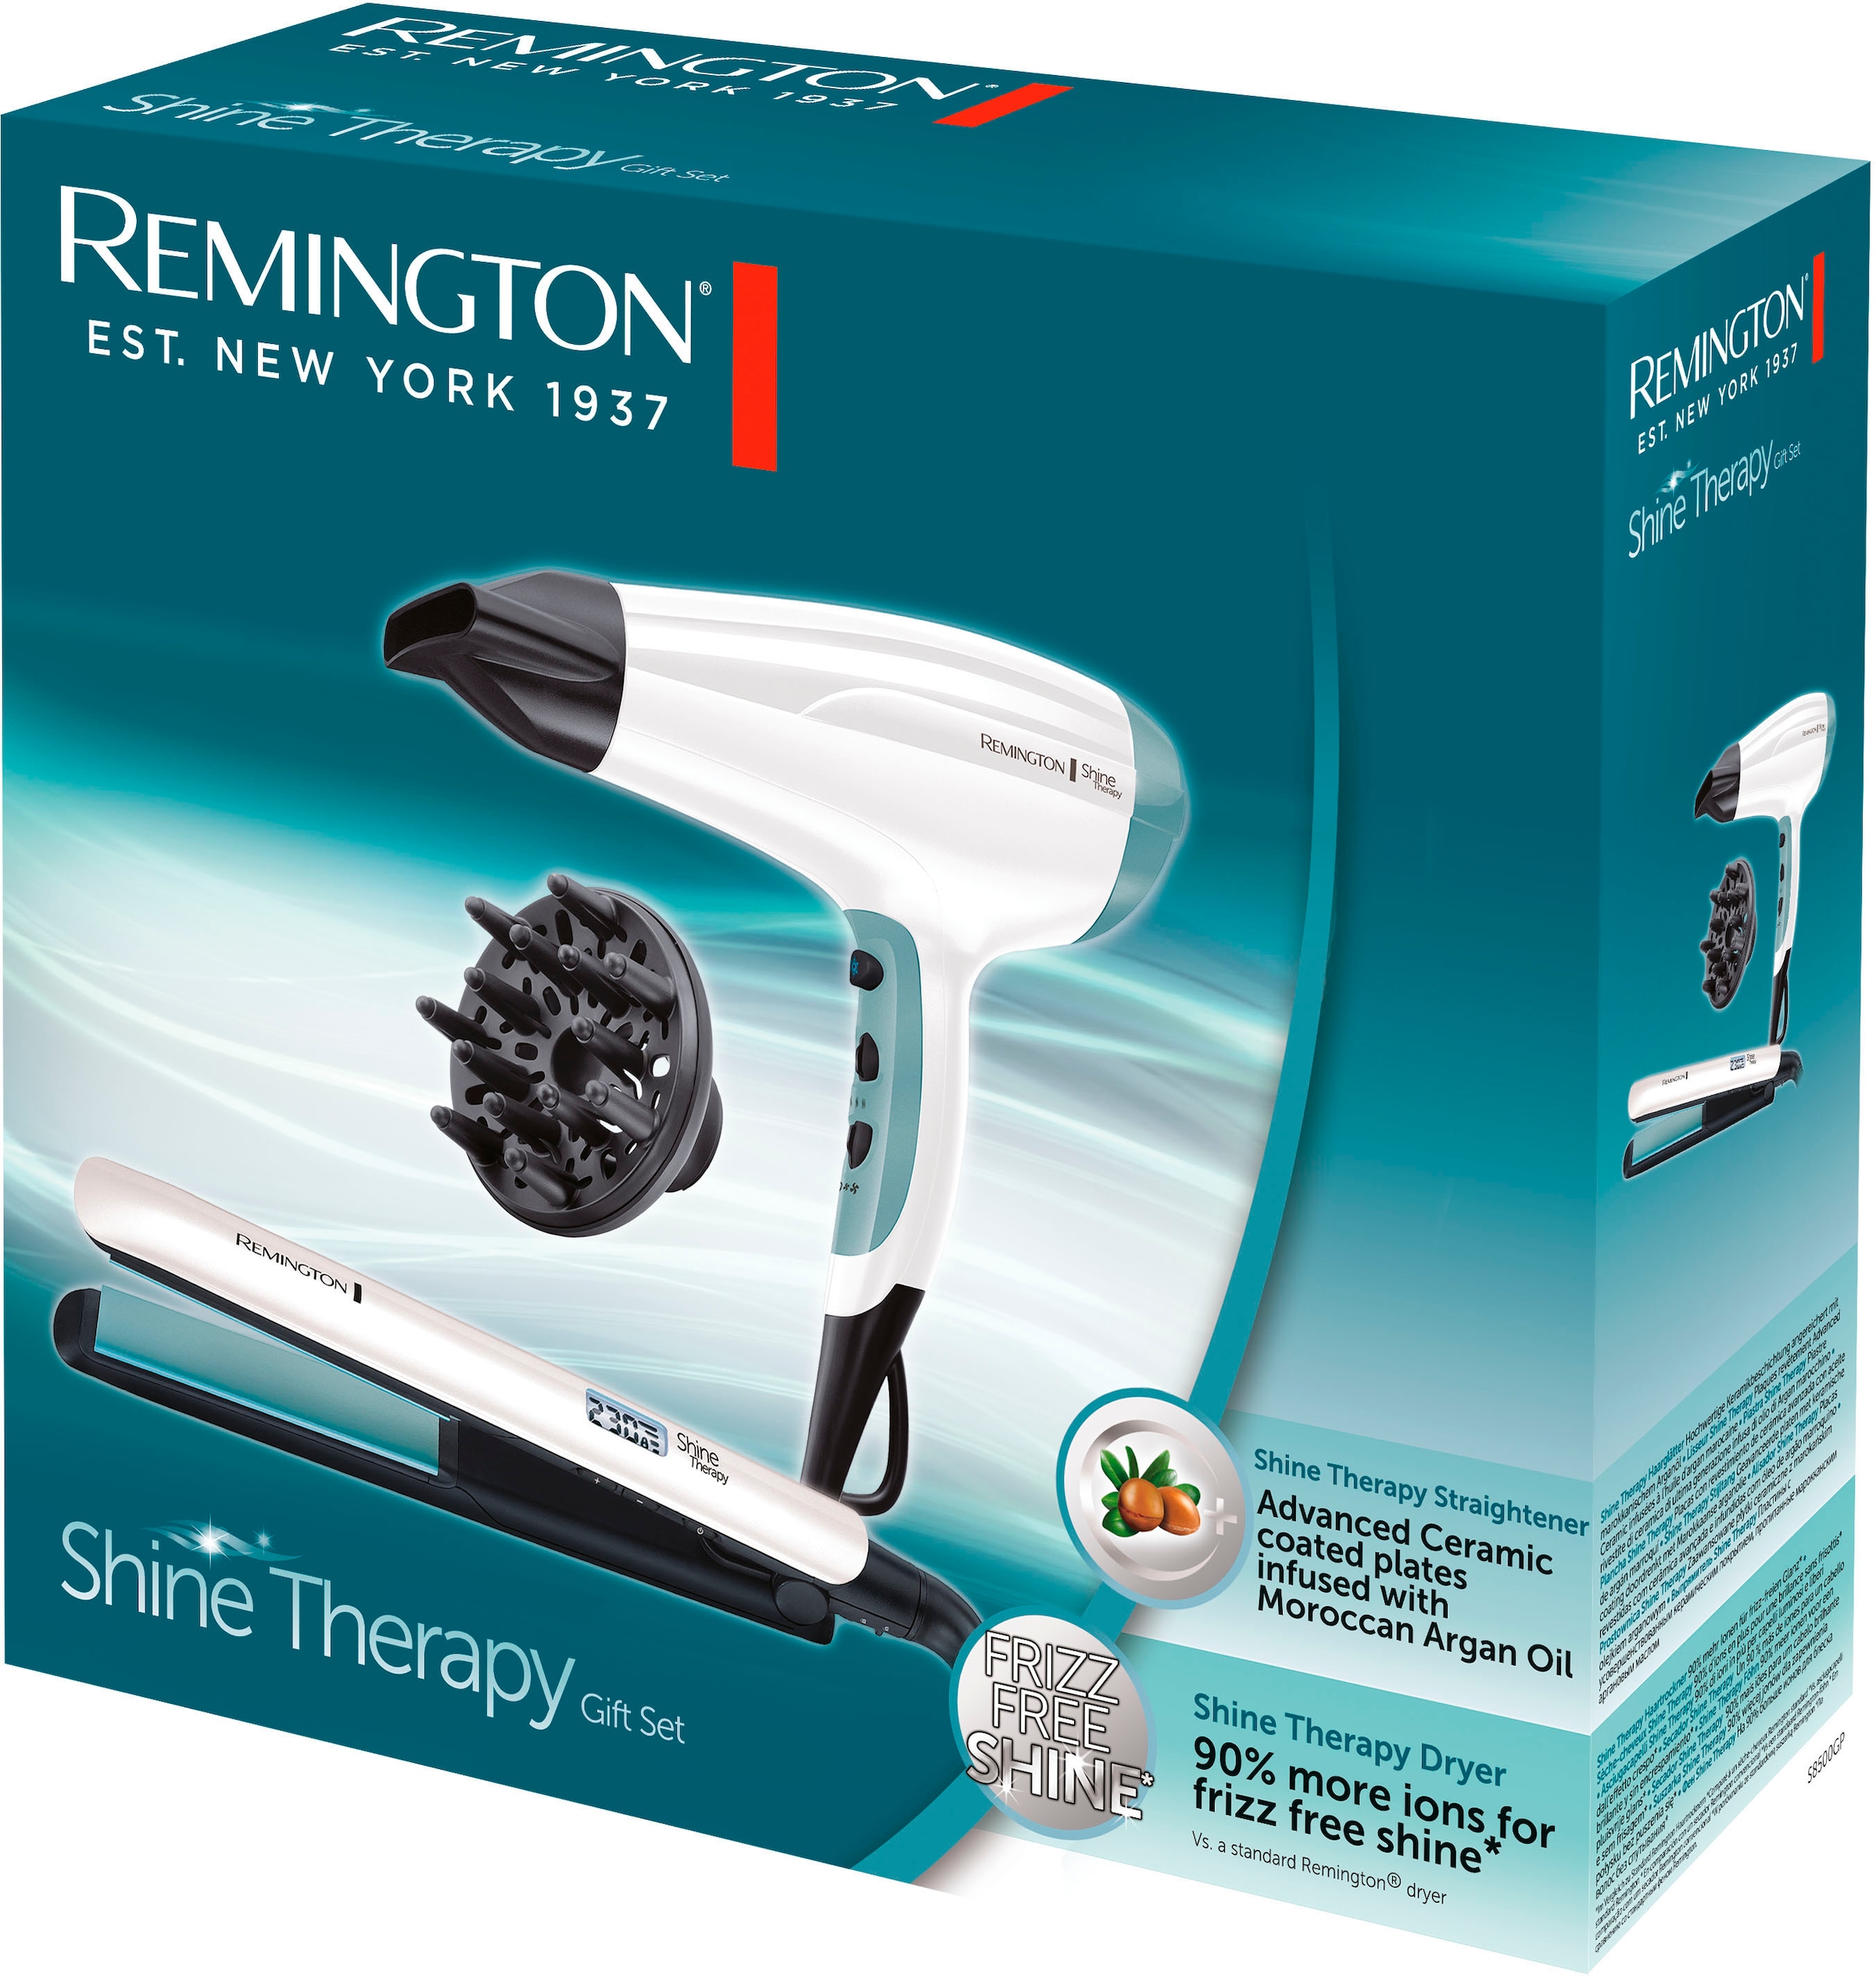 Remington Haartrockner »Shine 2 online und aus Haartrockner mit bestehend Therapy kaufen Keramikbeschichtung S8500GP 2300 W, Haarglätter Aufsätze, Geschenk-Set«